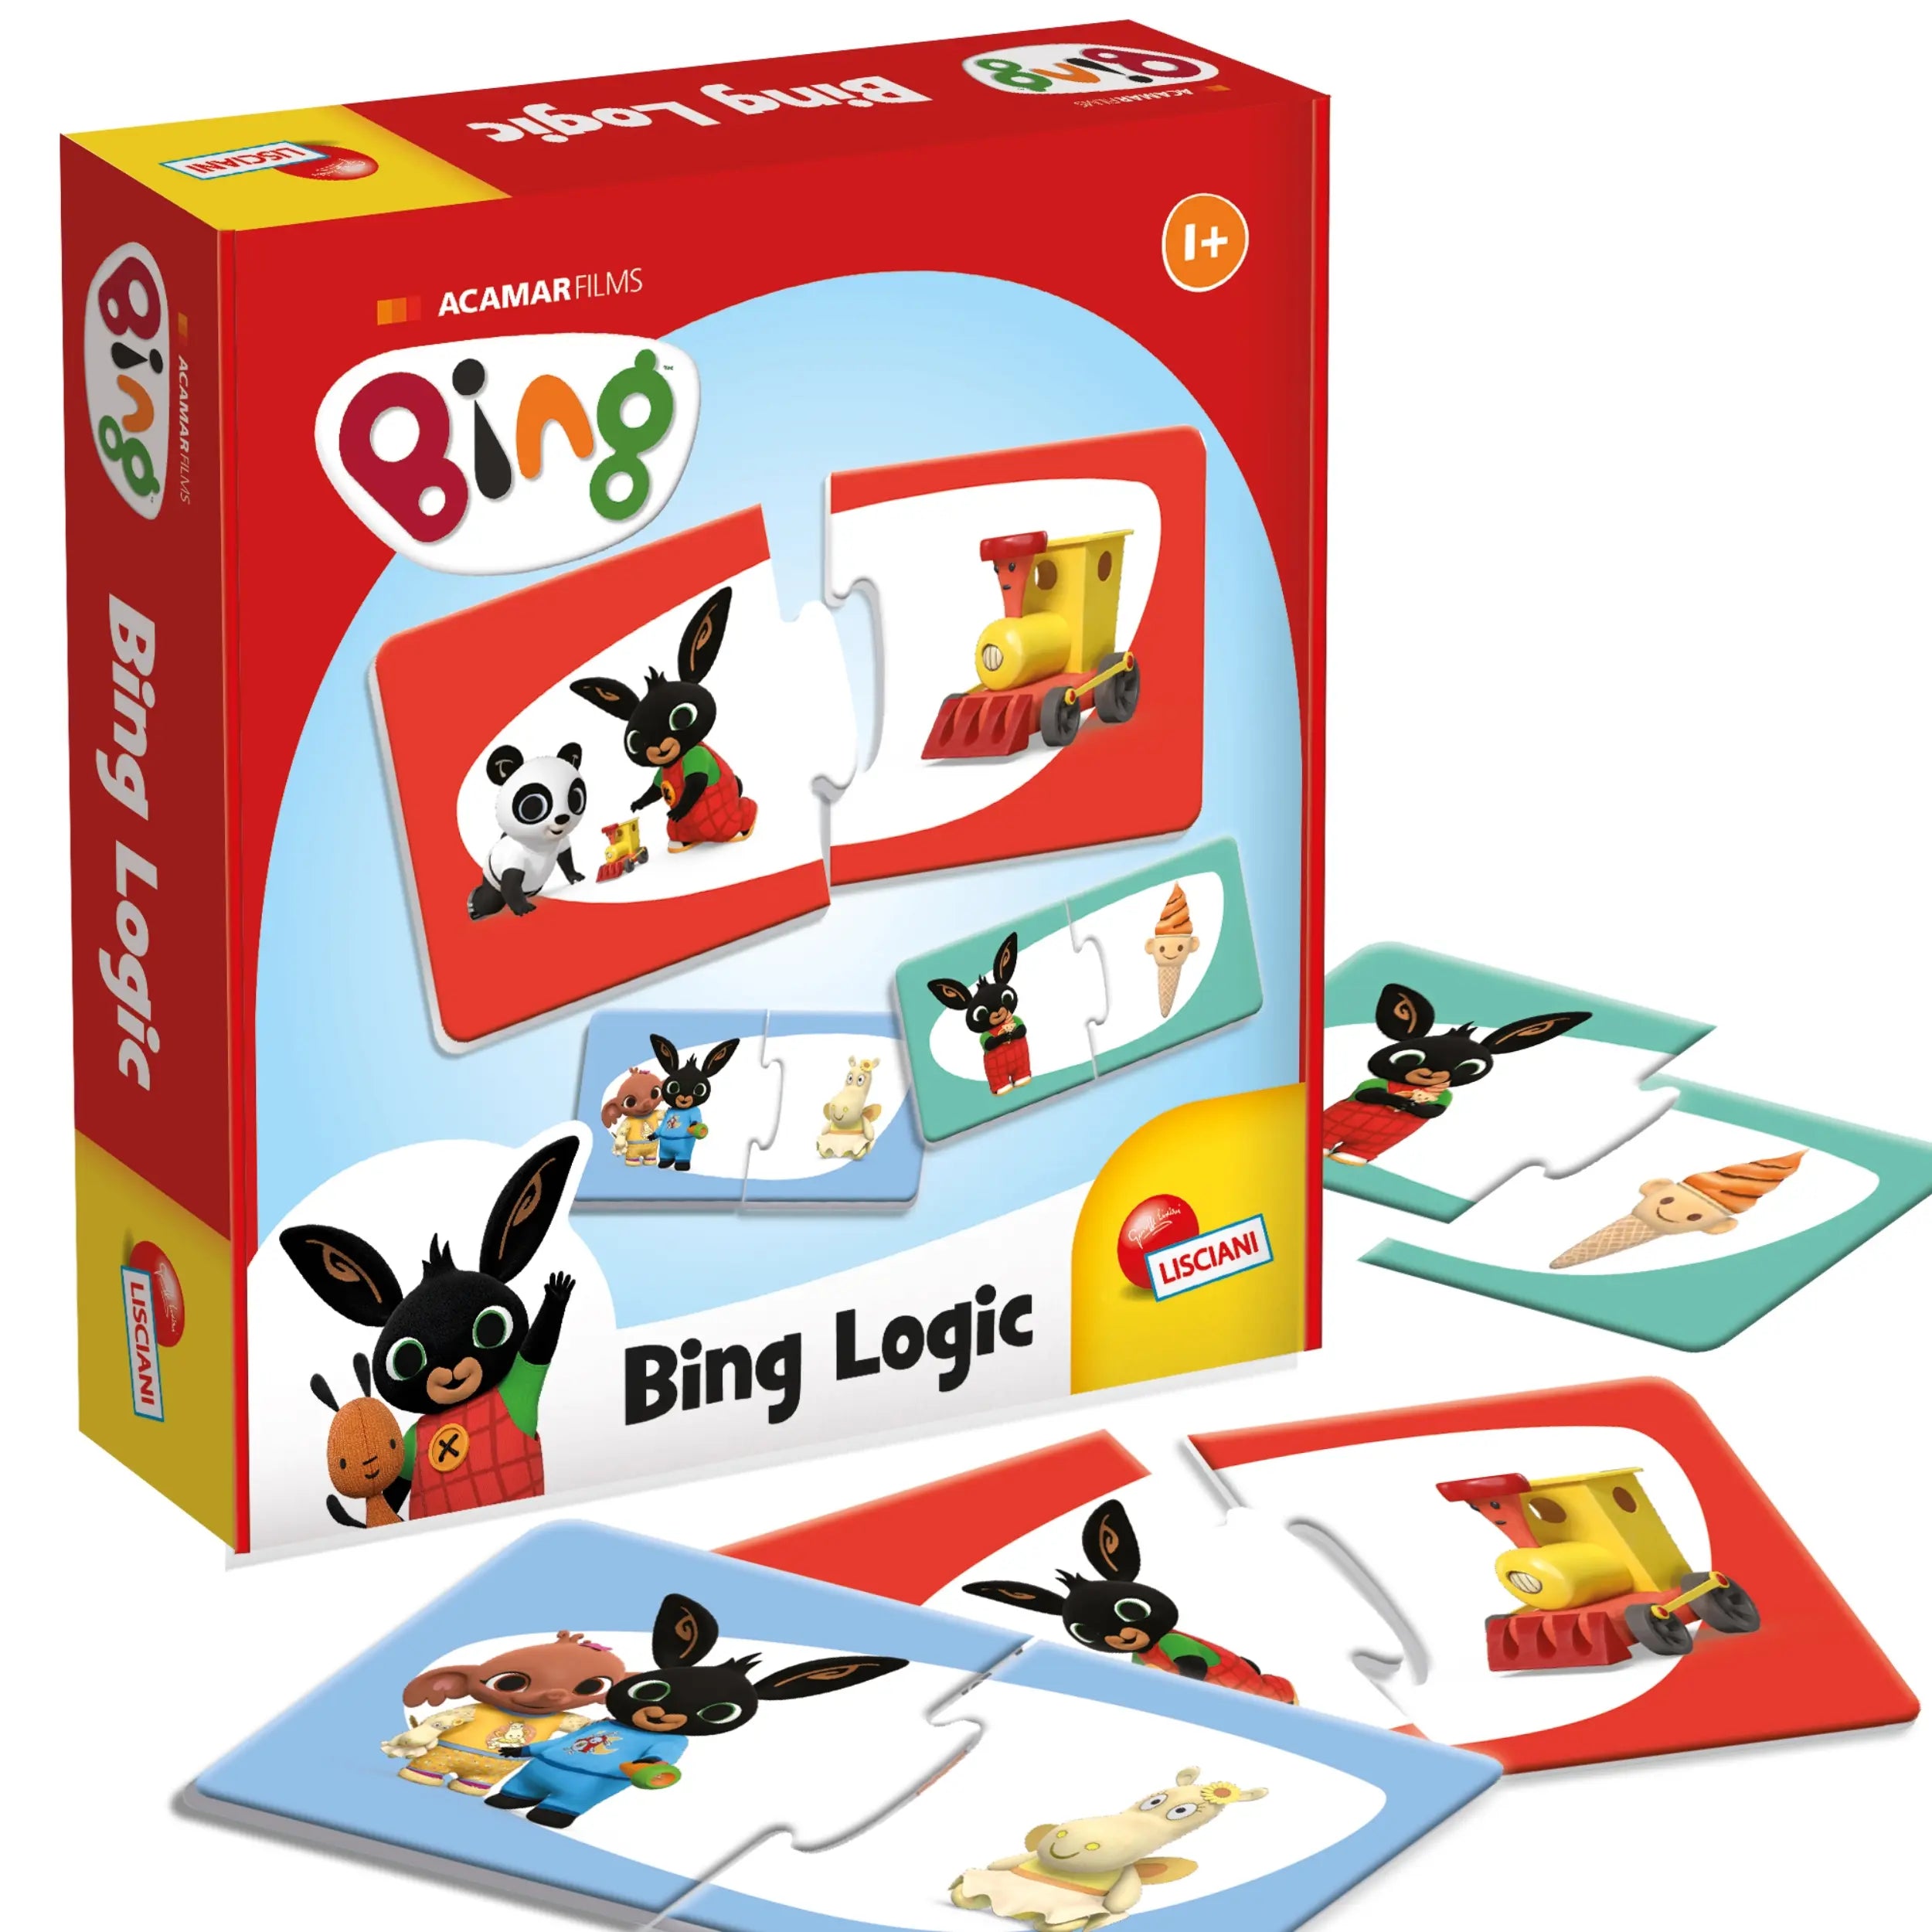 Lisciani - Bing Logic Game LSC95223 - International